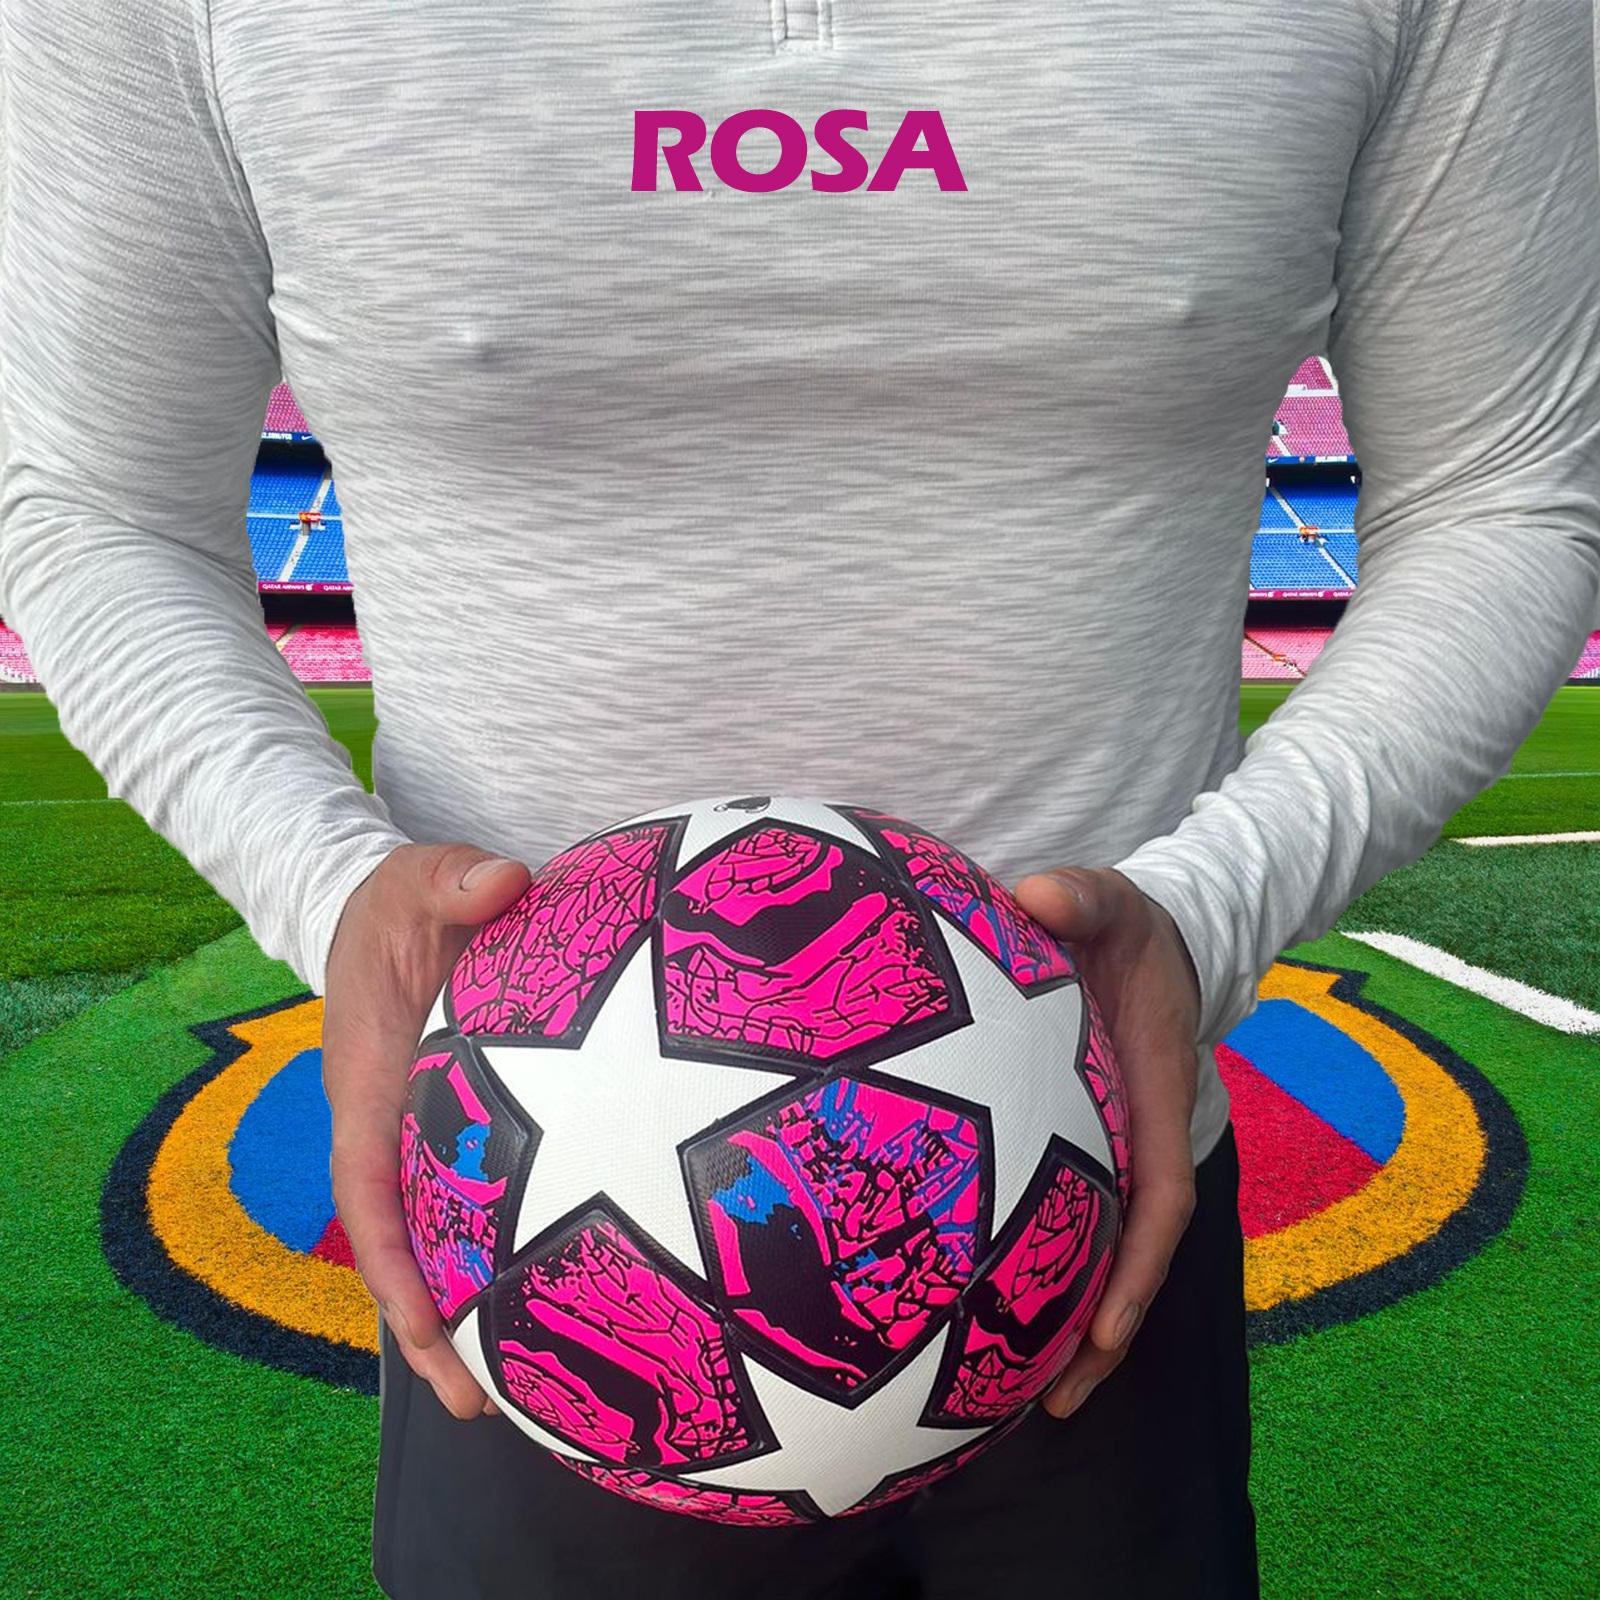 Balón Fútbol Soccer #5 Profesional de Estrellas Híbrido Champions Rosa